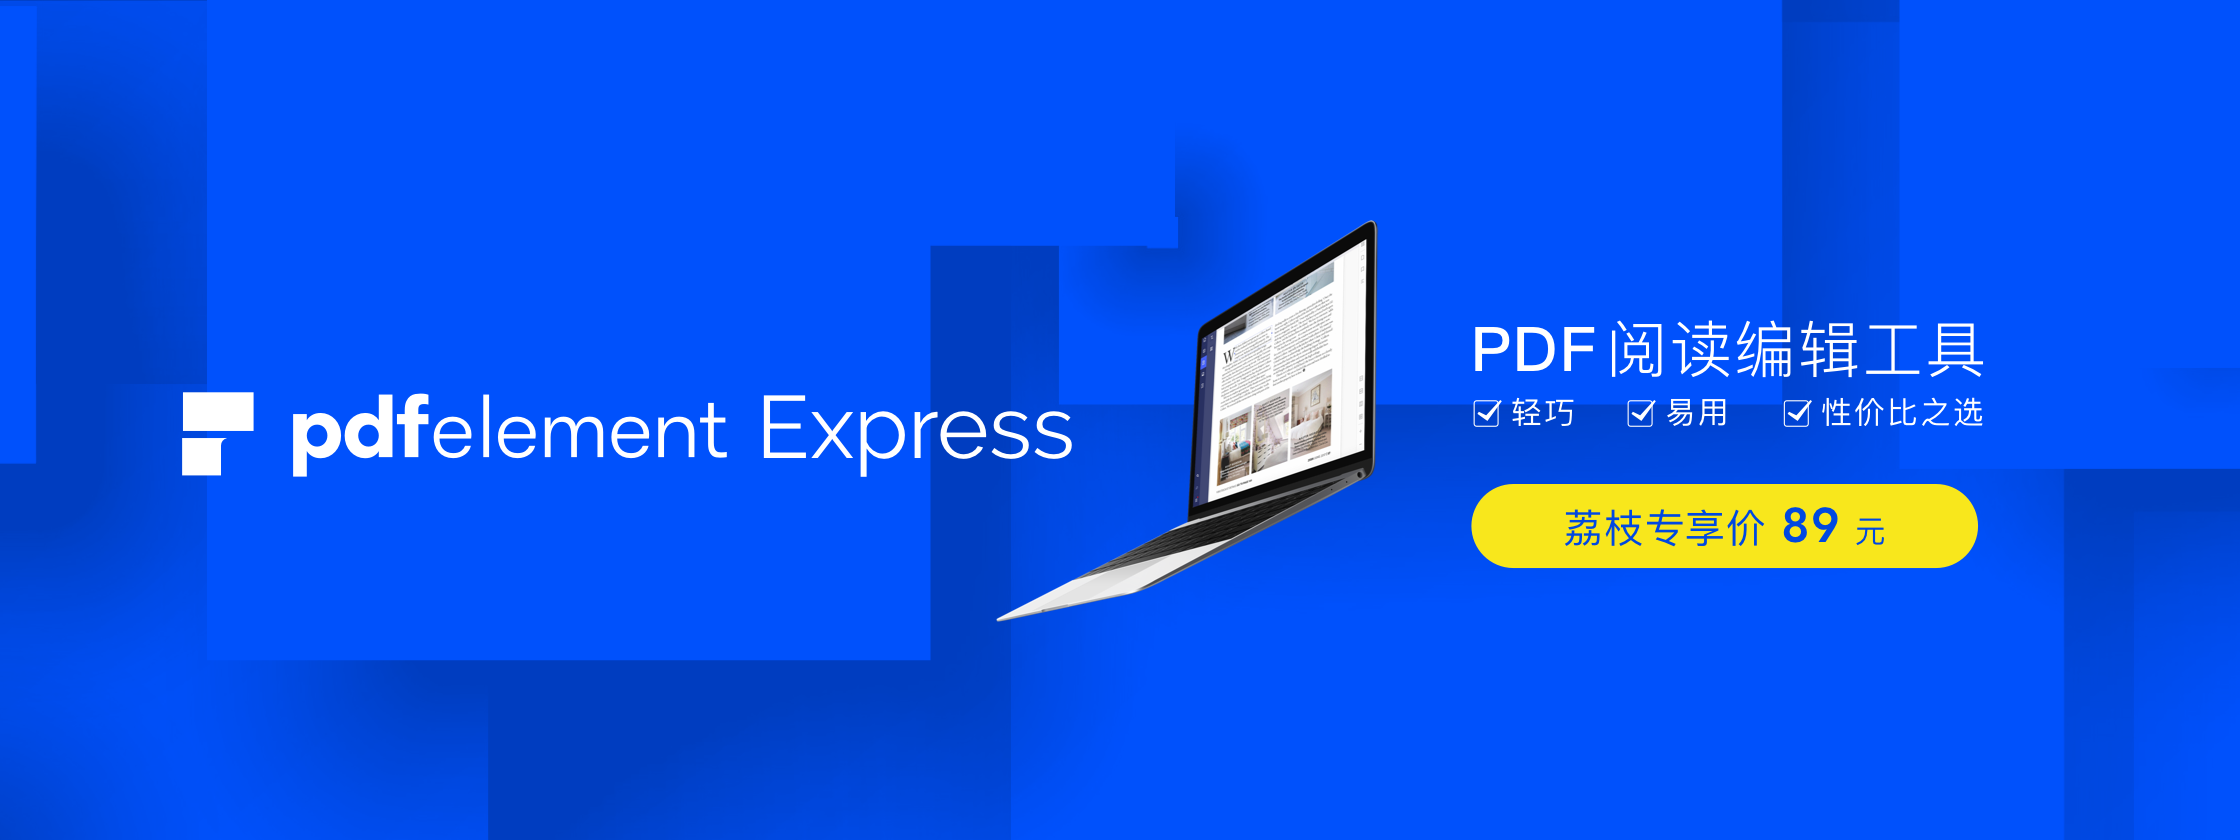 PDFelement Express：轻巧易用的 PDF 阅读编辑工具